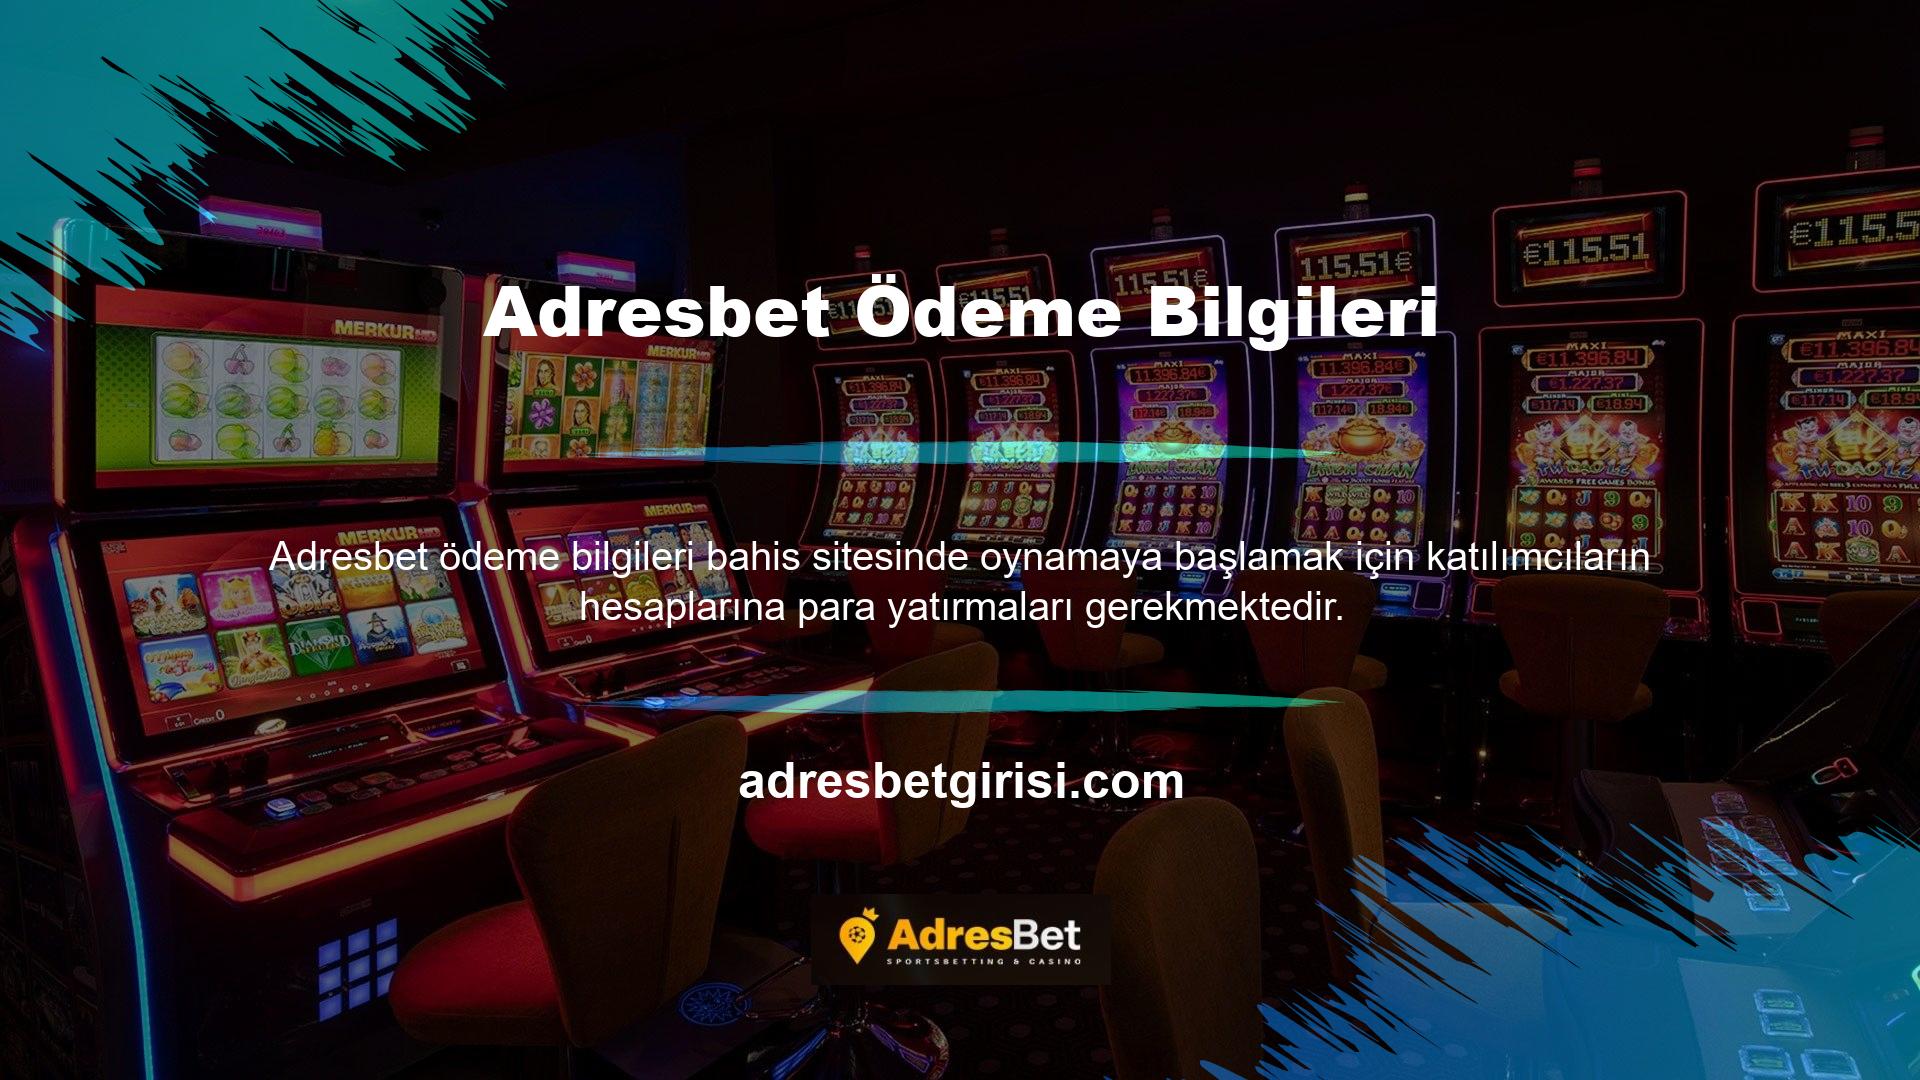 Adresbet, kredi kartıyla para yatırma işlemi yapılan bahis sitelerinden biridir